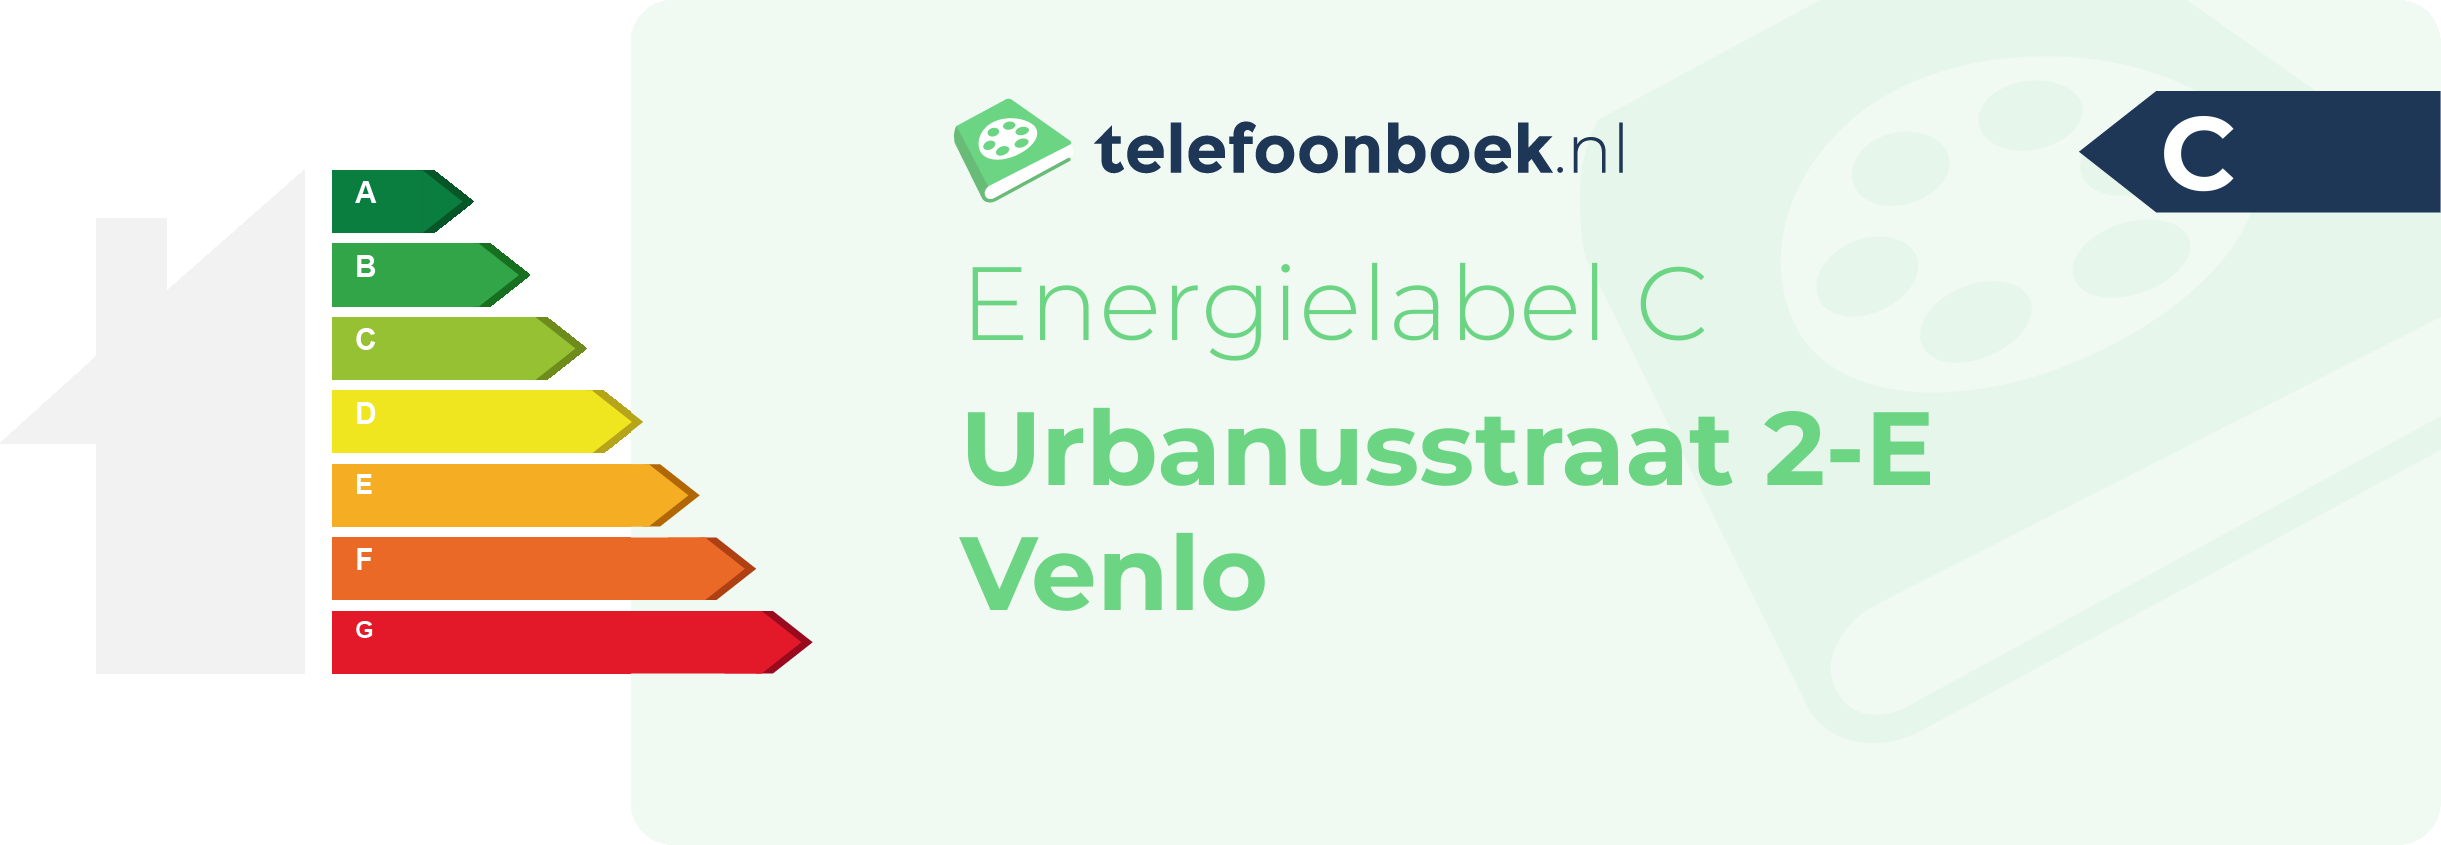 Energielabel Urbanusstraat 2-E Venlo